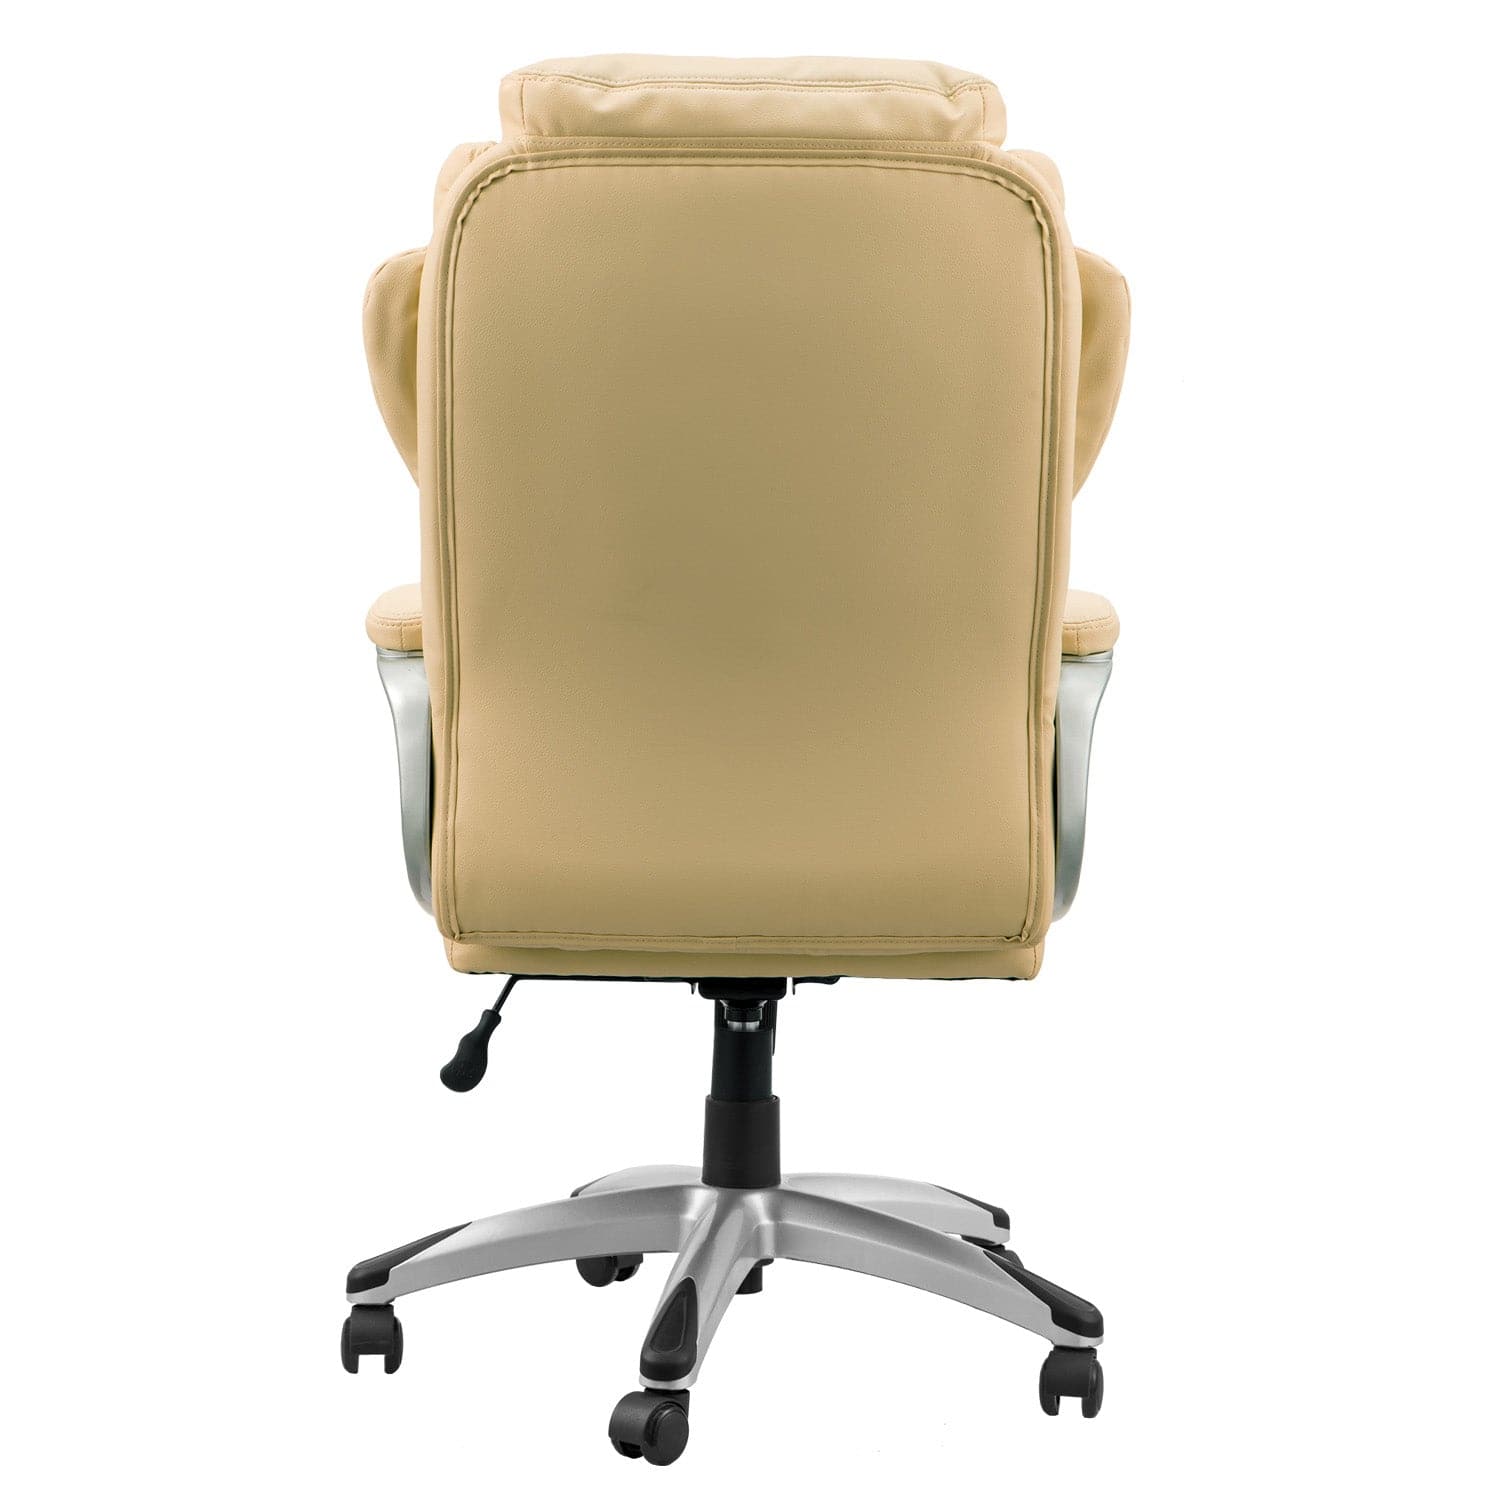 Ovios Executive Office Chair, High Back Desk Chair, Leather Computer Desk Chair for Home Office